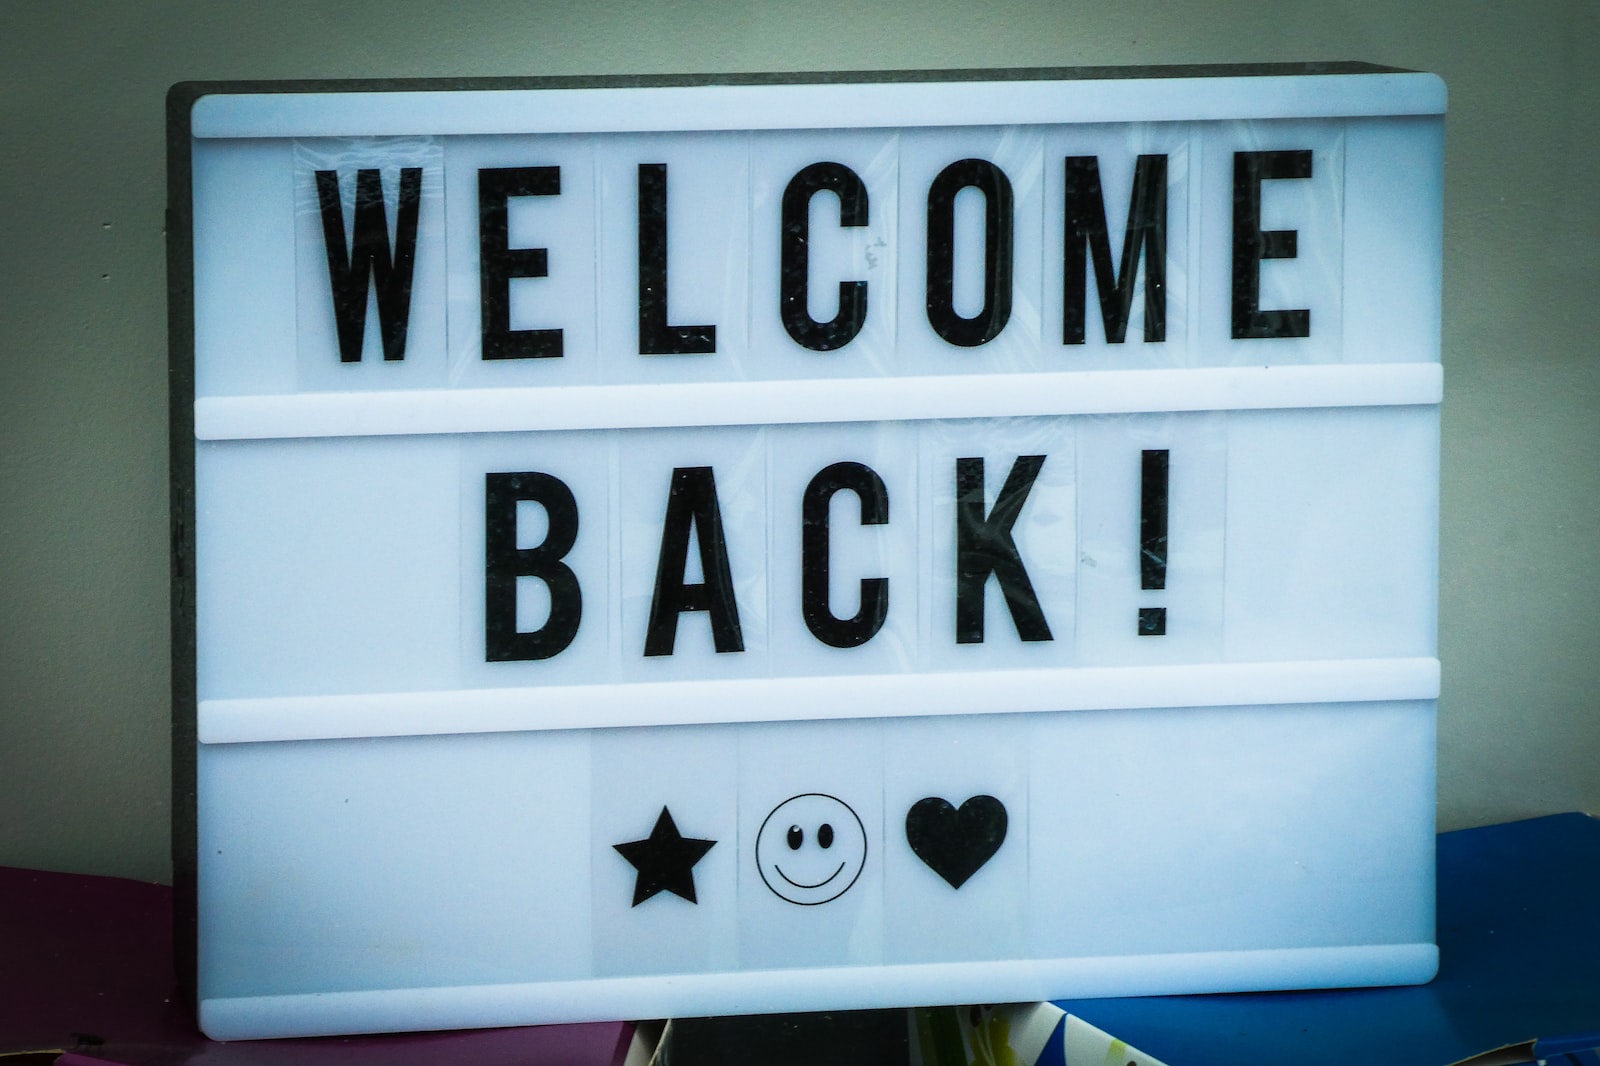 Rechtenvrije foto van de tekst 'Welcome back!' door Nick Fewings via Unsplash.